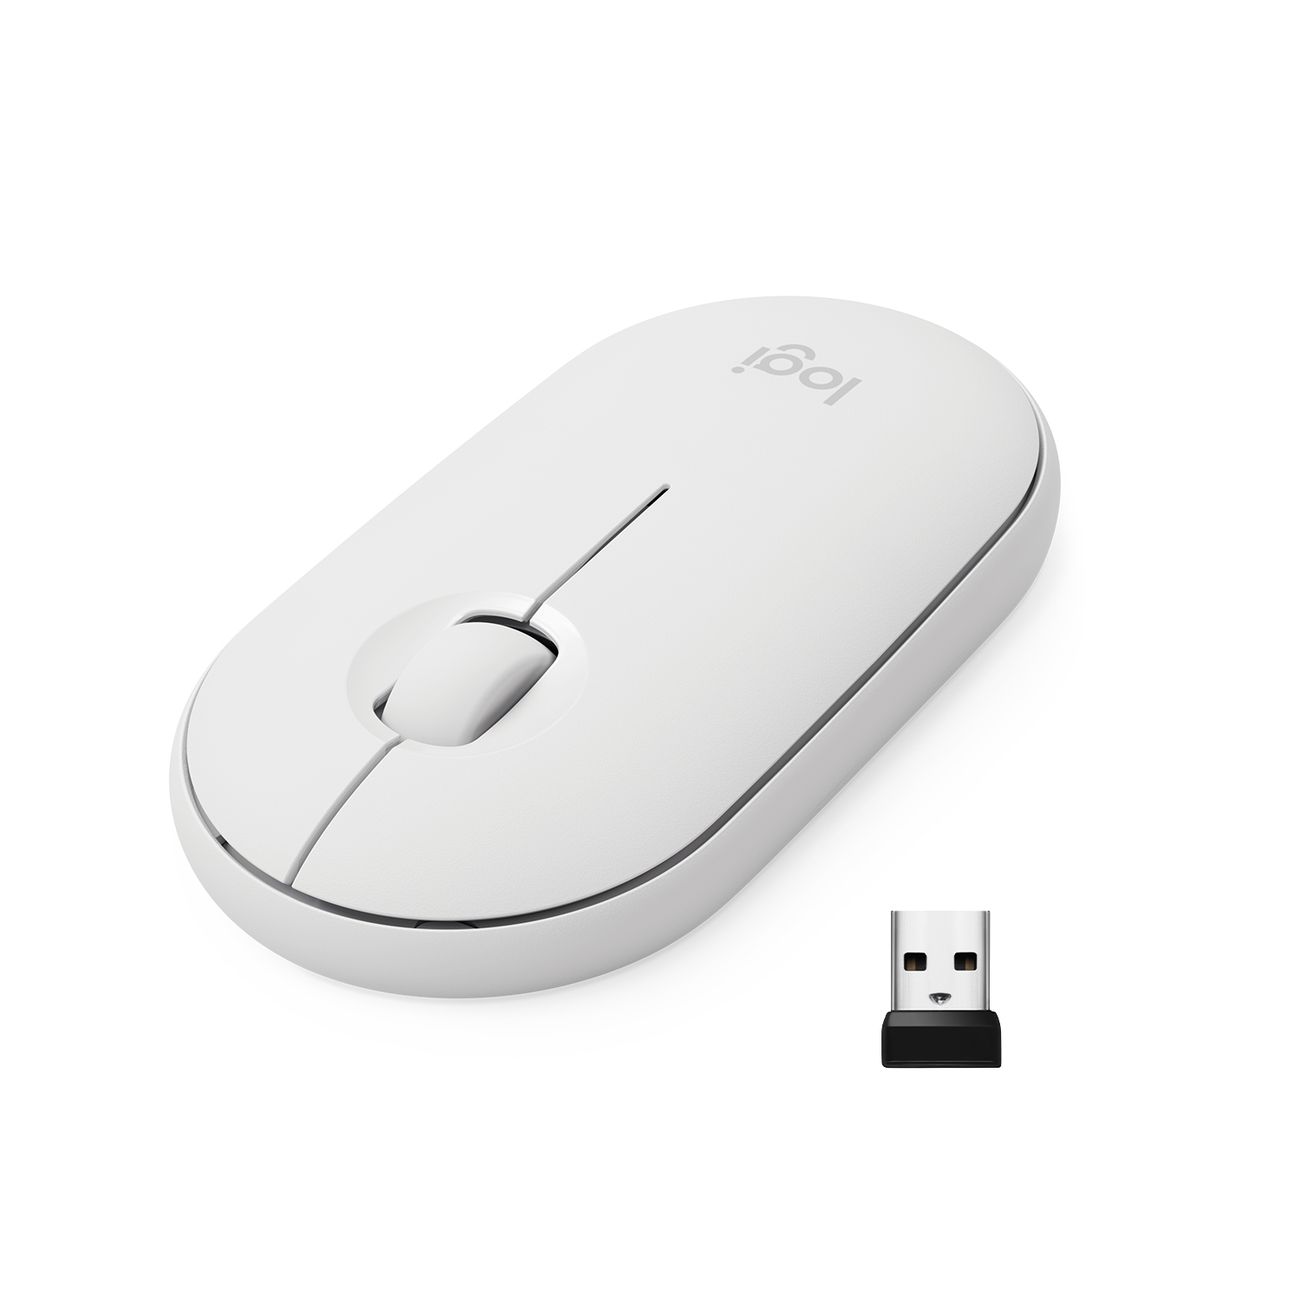 Мышь беспроводная Logitech M350 Pebble Mouse, white (910-005716) мышь logitech pebble m350 white 910 005716 910 005541